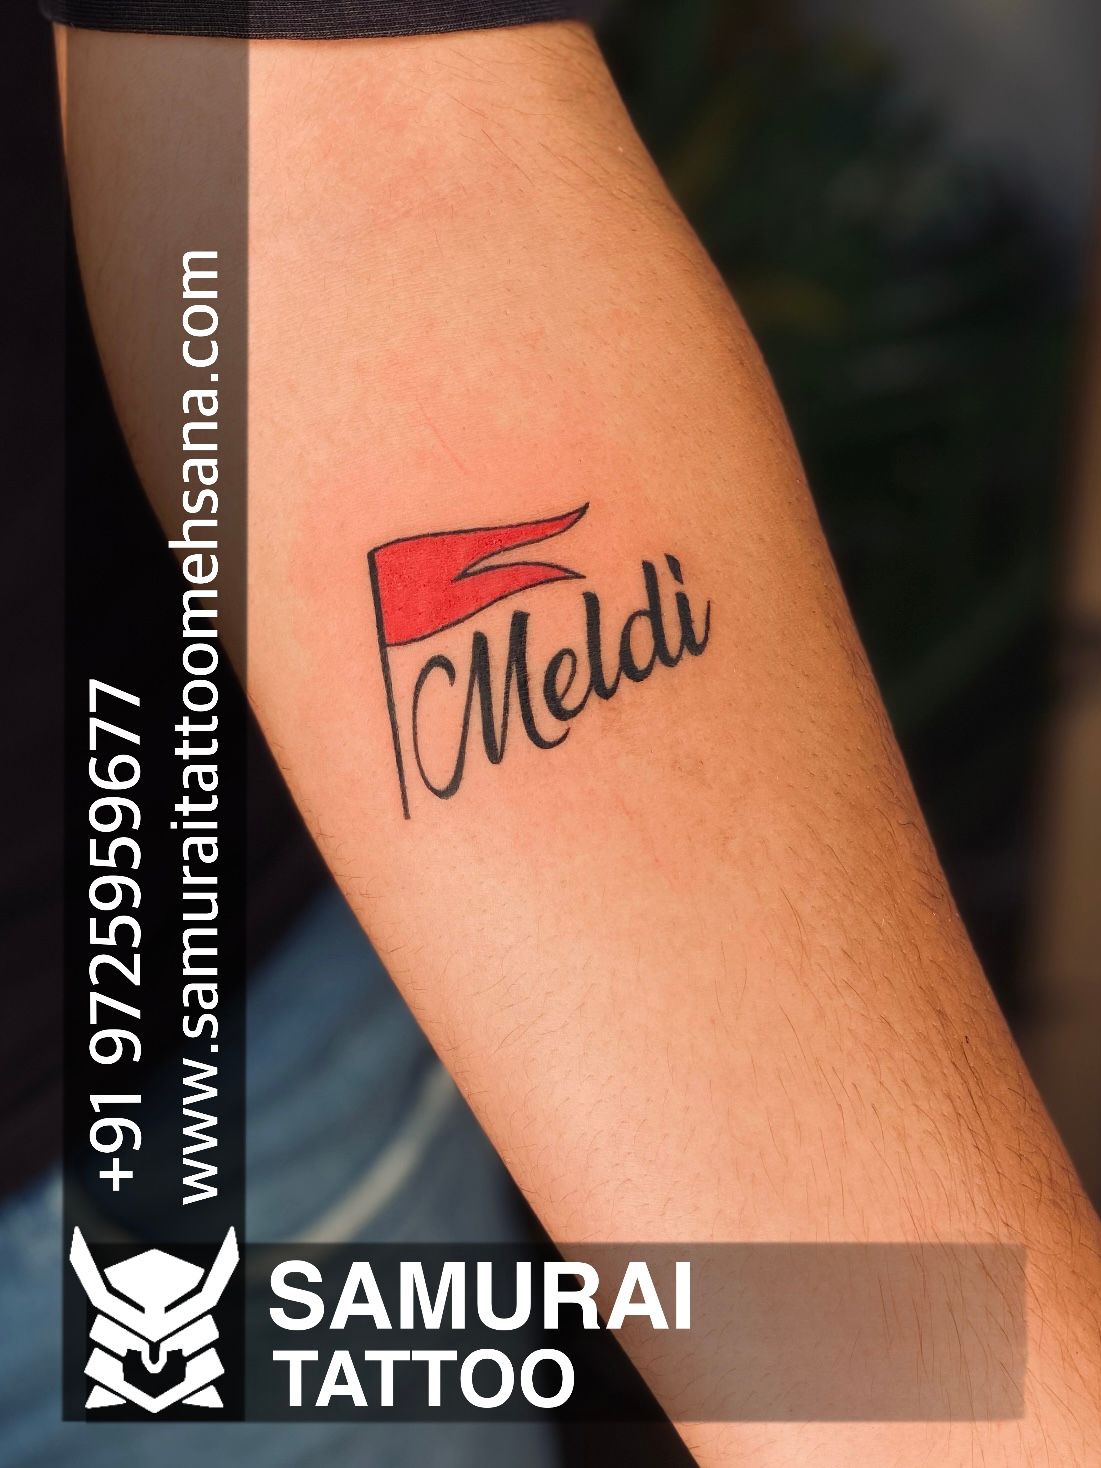 Maa tattoo | Tattoo designs wrist, Maa tattoo designs, Tattoos